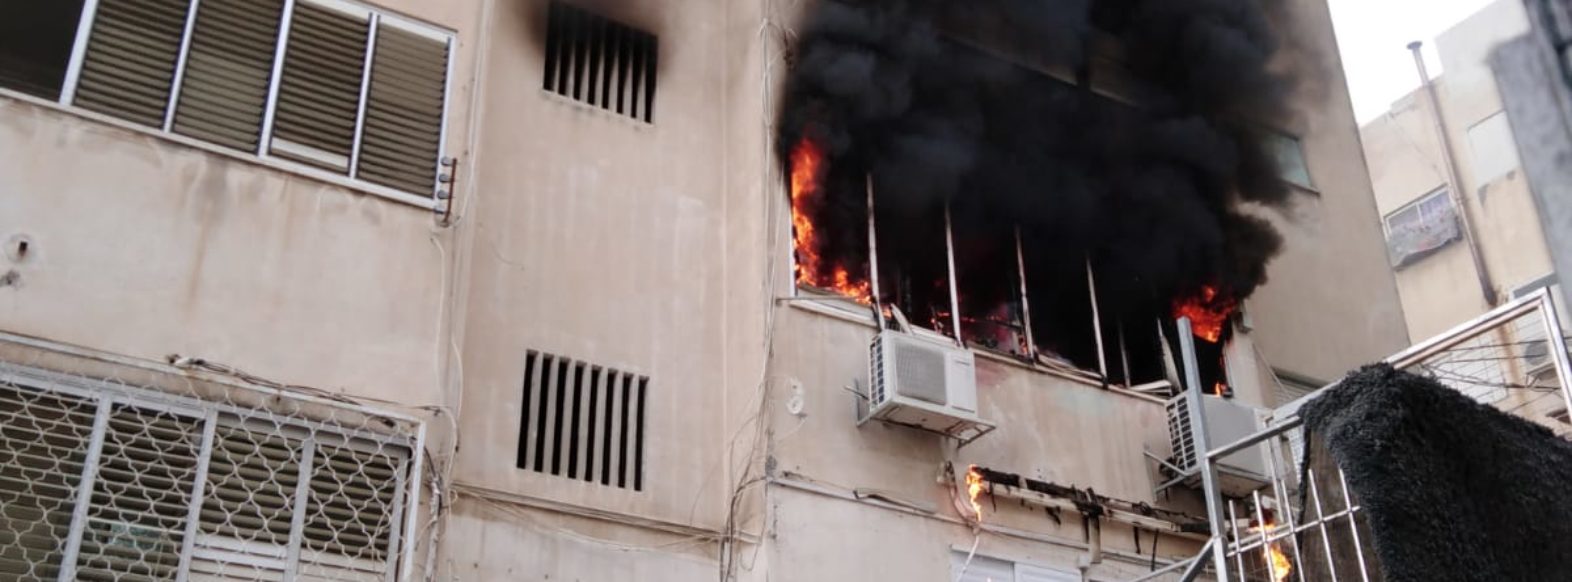 12 נפגעים בחיפה כתוצאה משריפה שפרצה בדירה